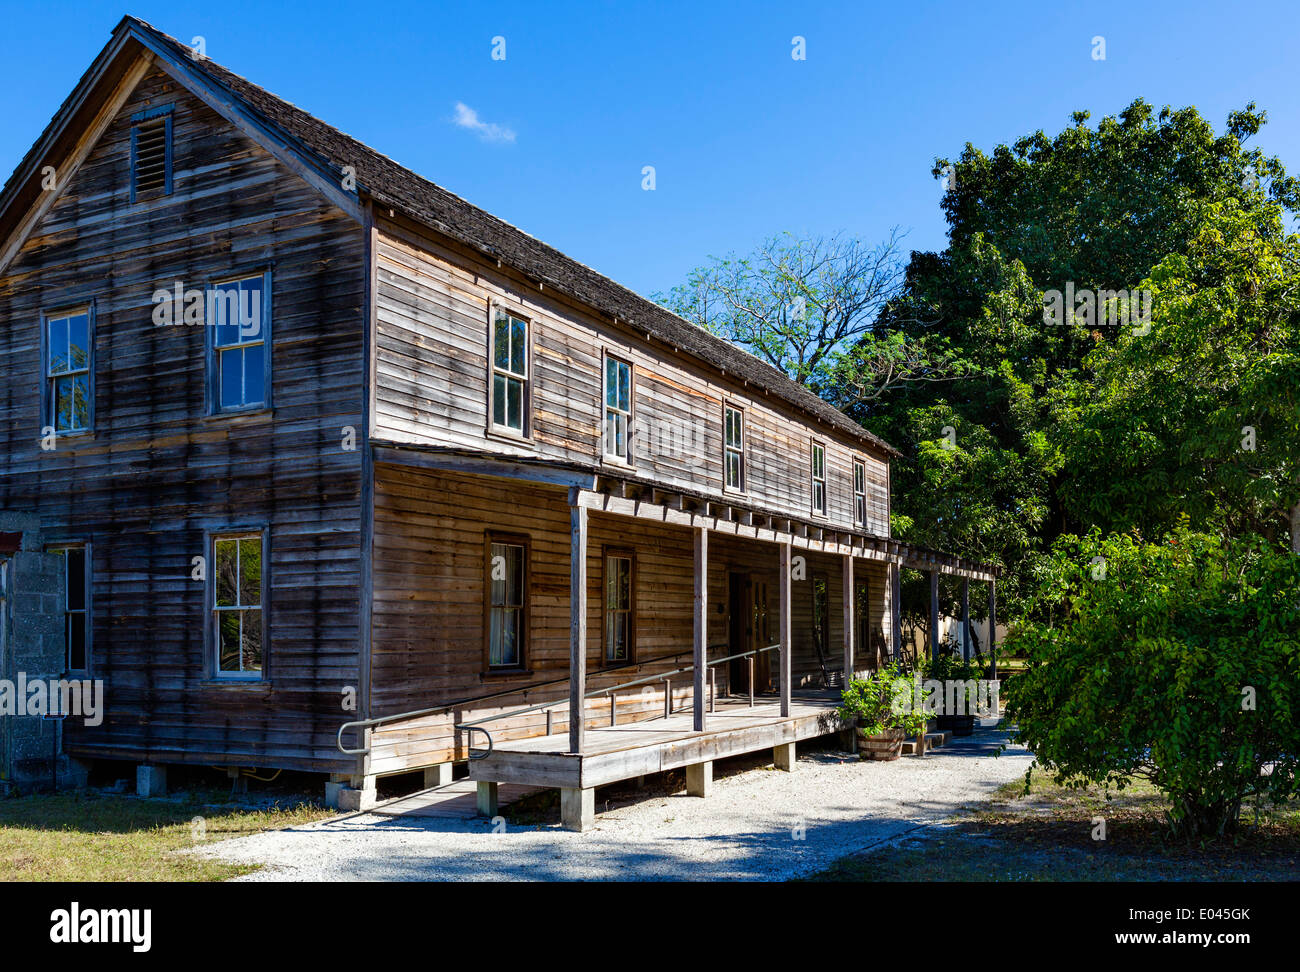 Casa del Fundador, la casa del asentamiento Unidad Koreshan fundador el Dr. Cyrus conectada, Koreshan State Historic Park, Estero, Florida, EE.UU. Foto de stock